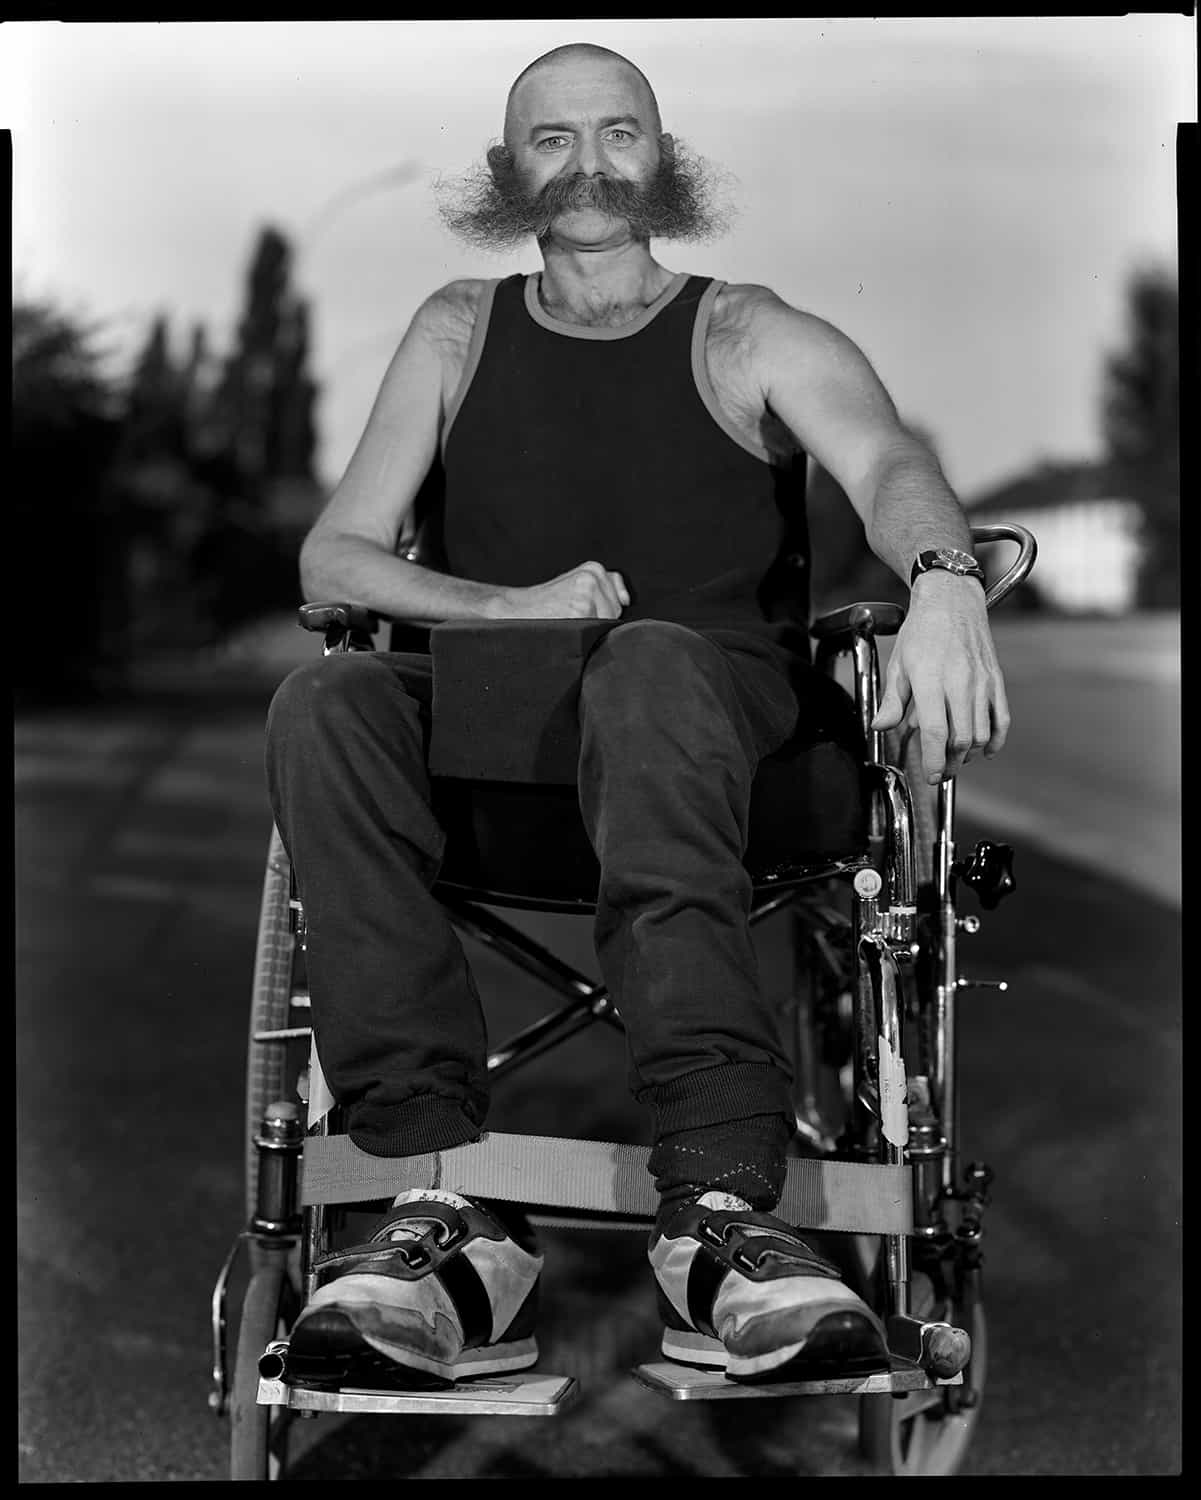 photographie d'un homme accidenté de la route en fauteuil © francois nussbaumer